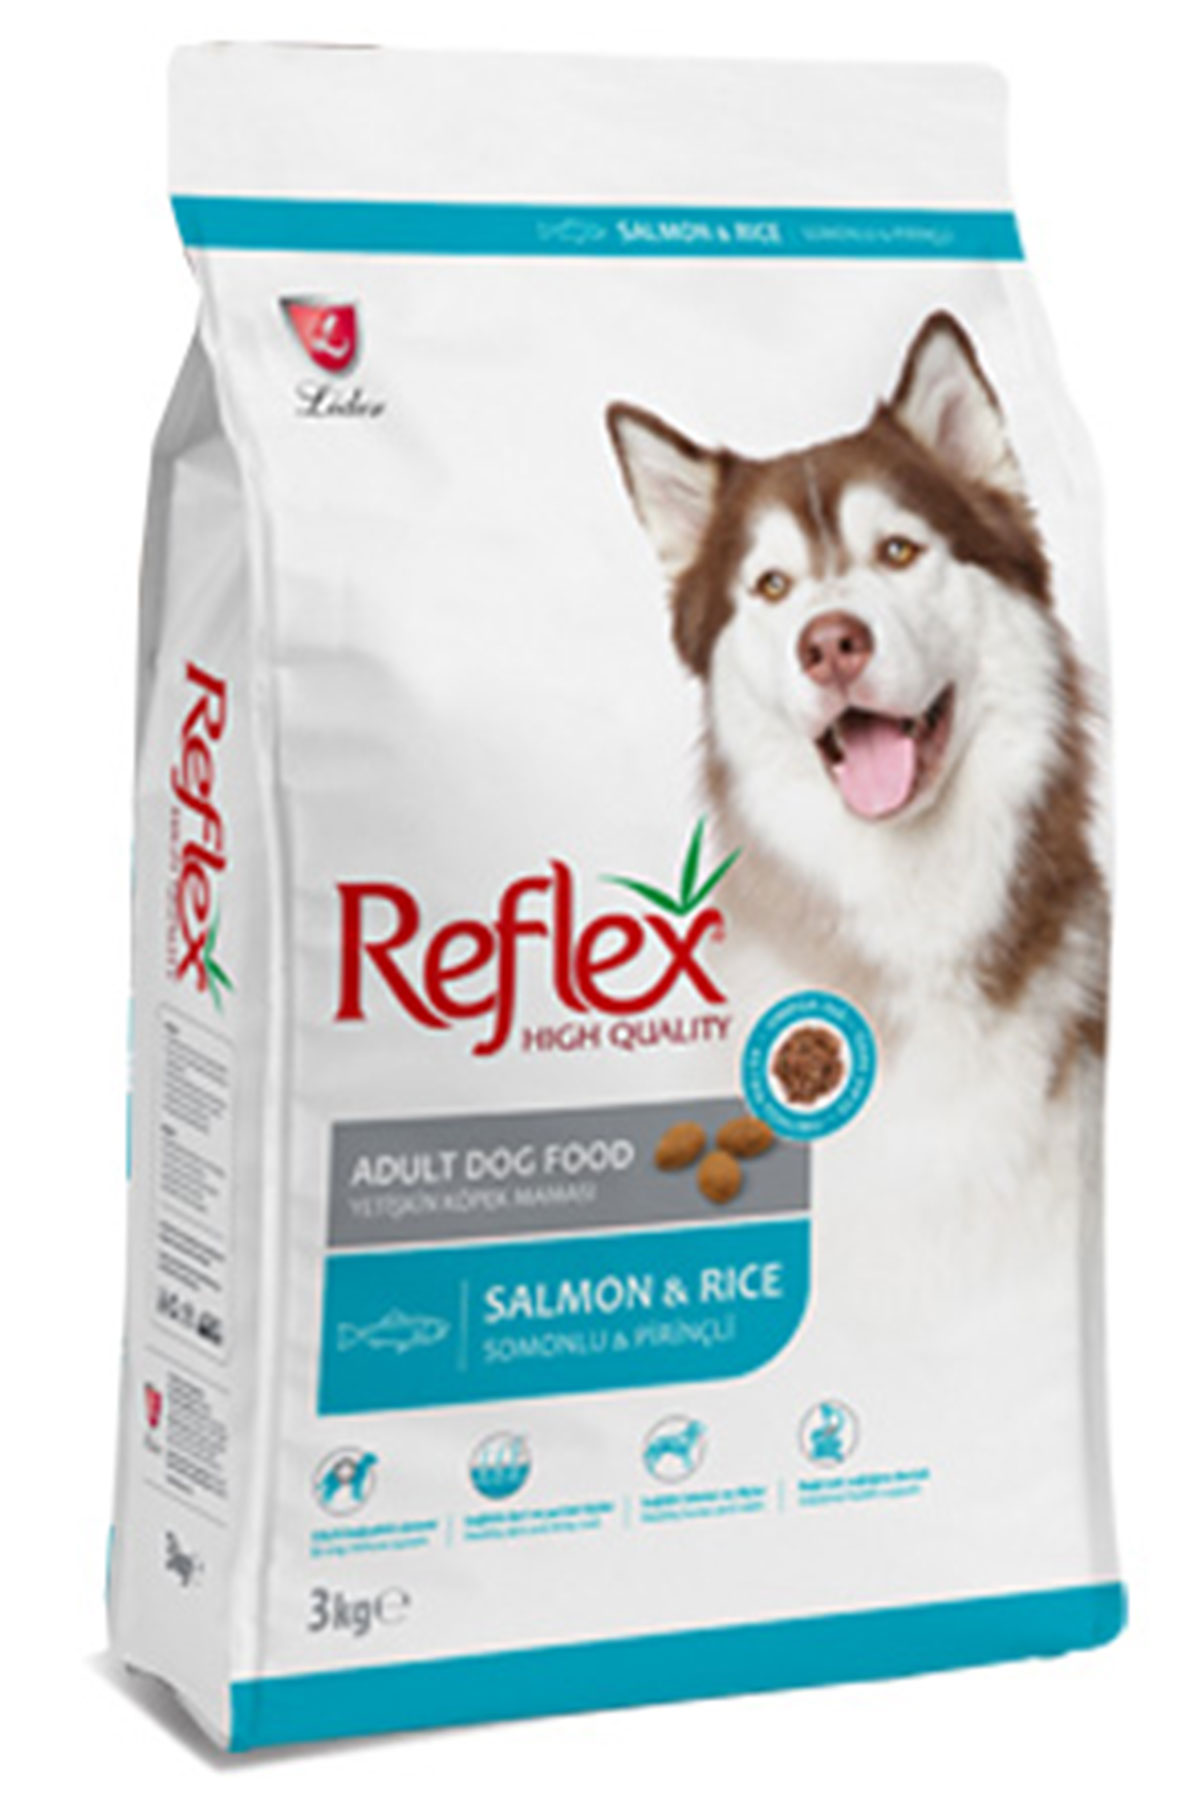 Reflex Balık ve Pirinçli Yetişkin Köpek Maması 3kg